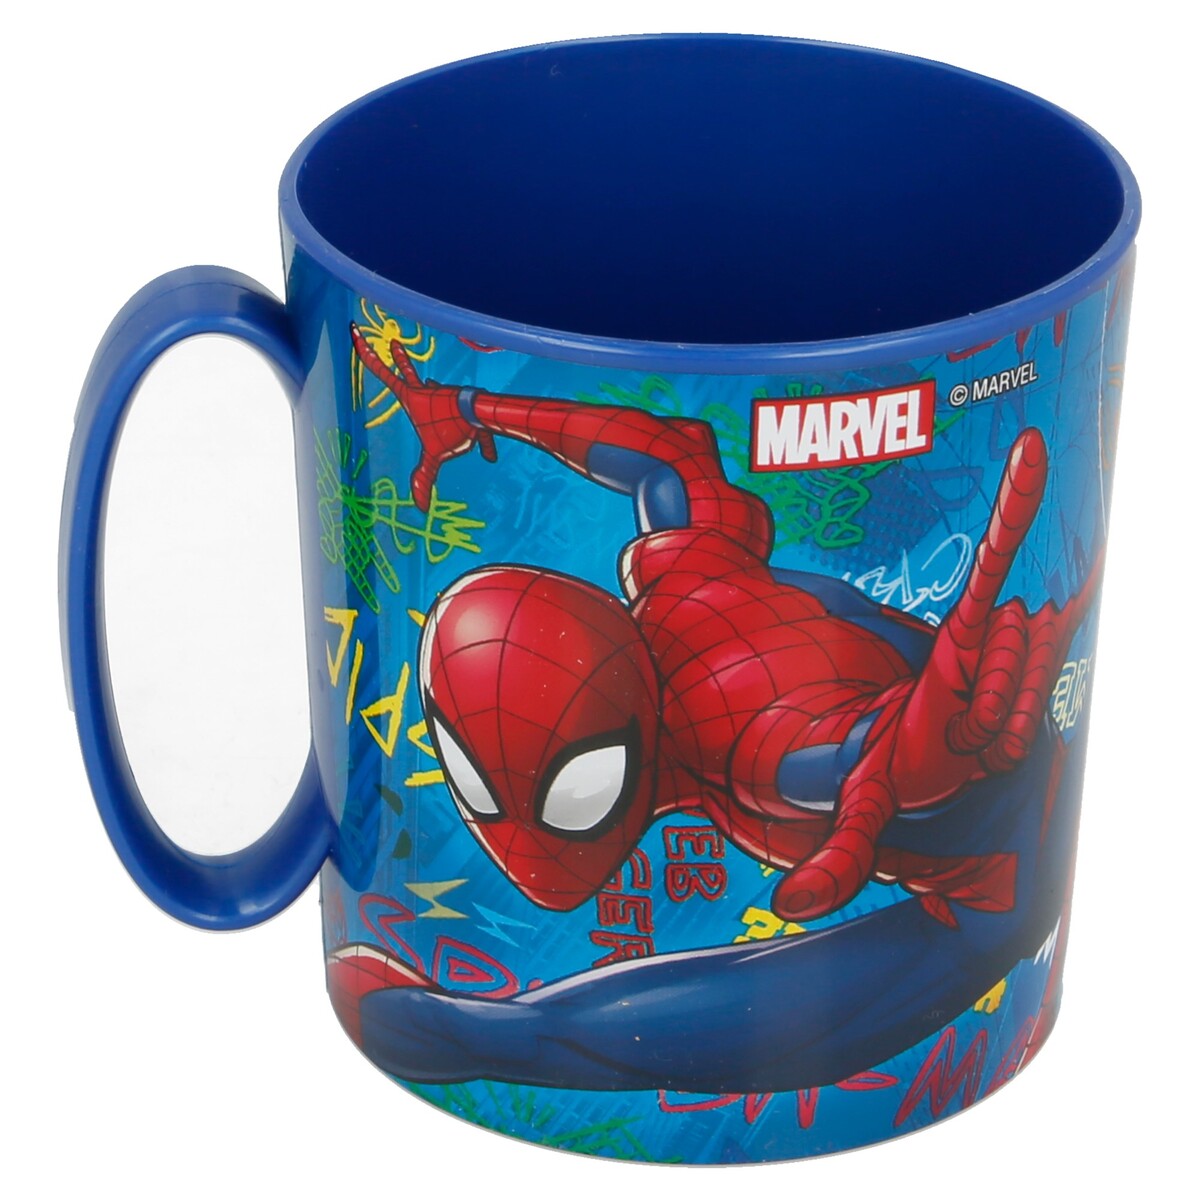 Spiderman Graffiti Micro Mug 350ml